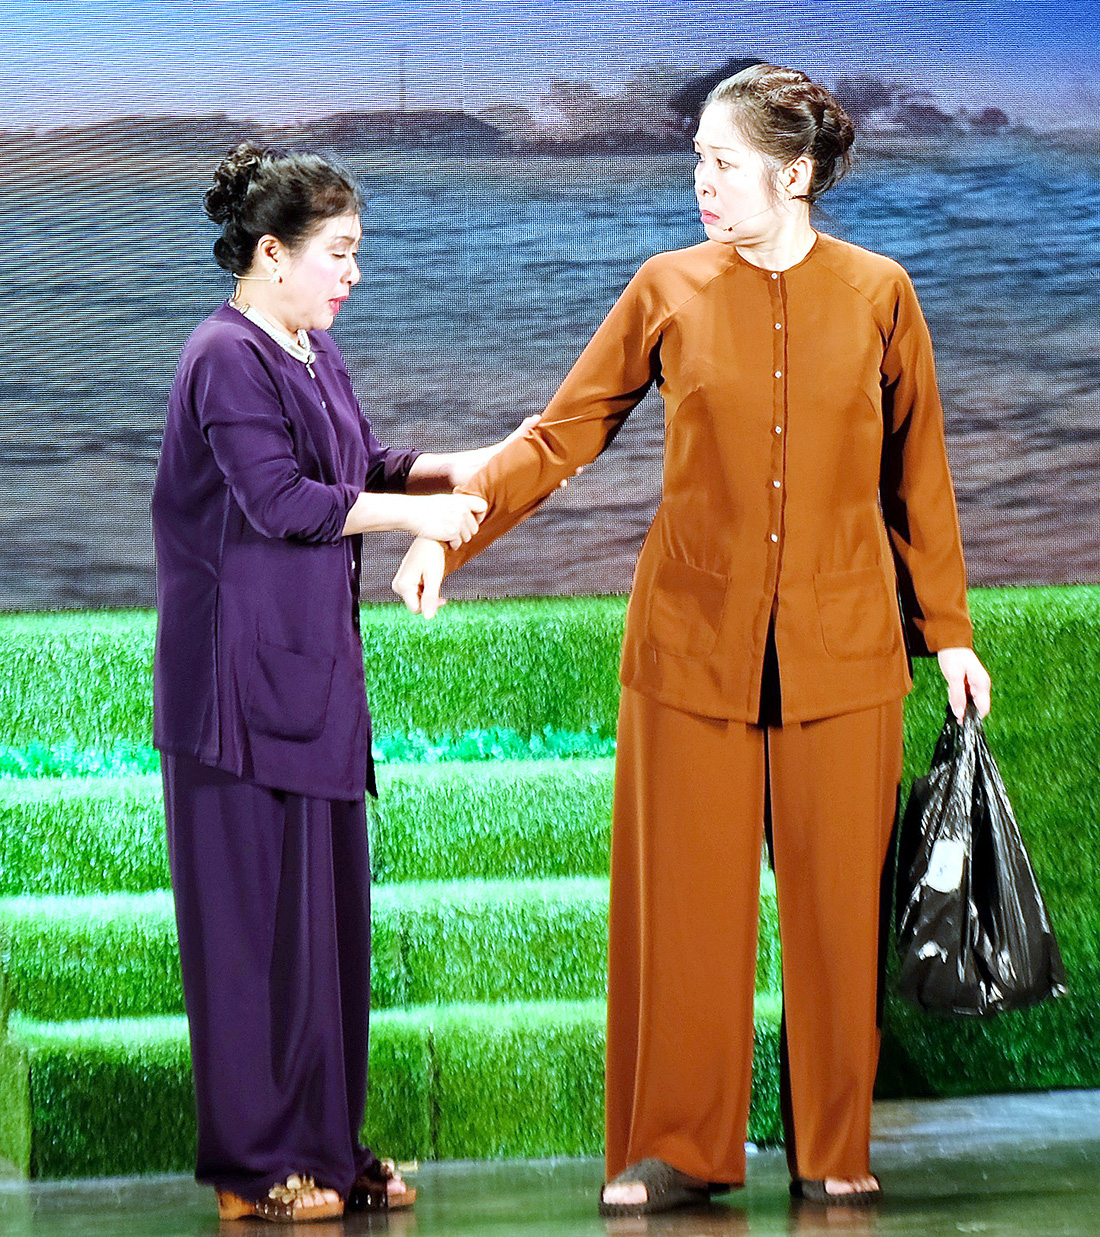 Nghệ sĩ  Thanh Thủy  (vai bà Ba)  và nghệ sĩ  Hồng Vân  (vai bà Hai)  đóng cặp  “sui gia khắc khẩu” - Ảnh: LINH ĐOAN